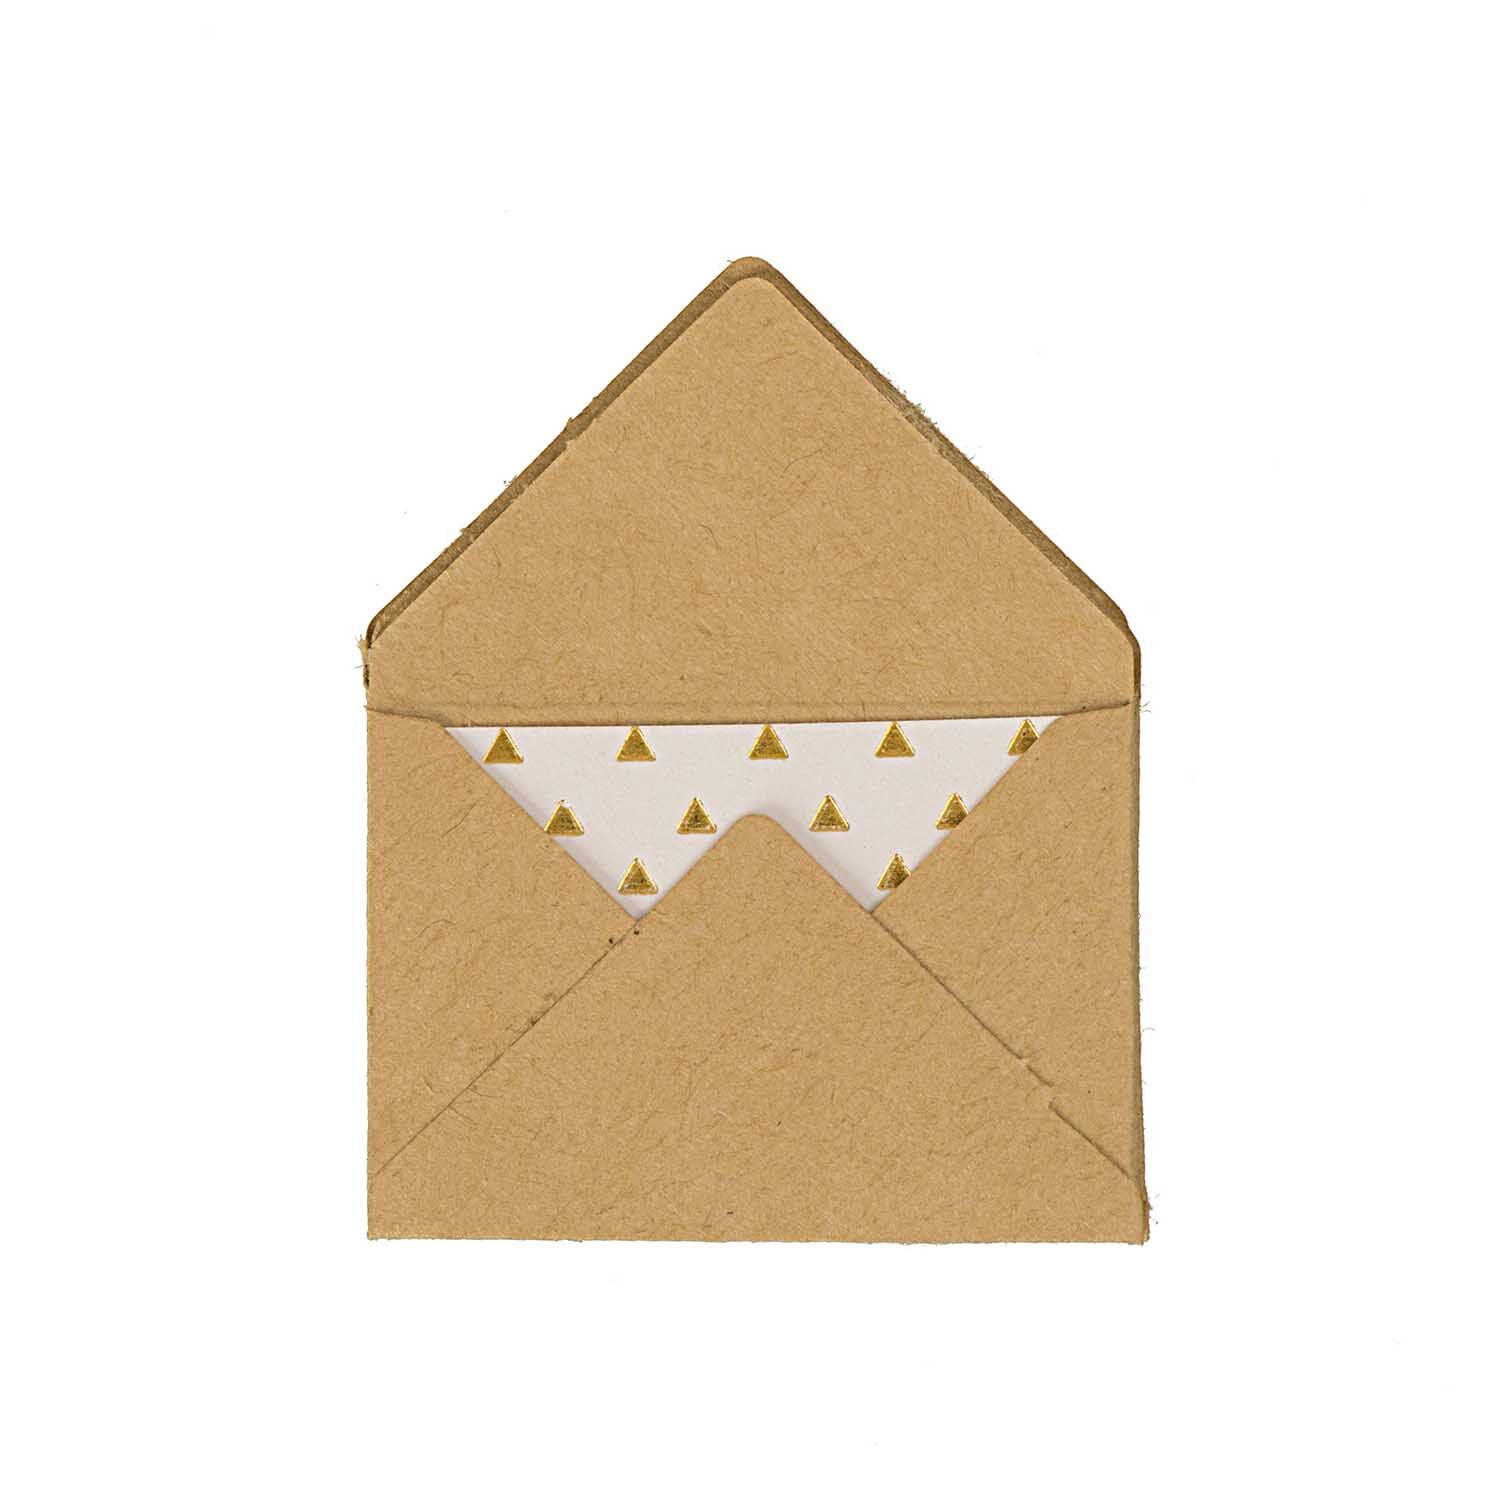 NEU Mini Briefumschläge & Karten, 3 x 4,5 cm, 10 Stück, Kraftpapier - Hot Foil Gold